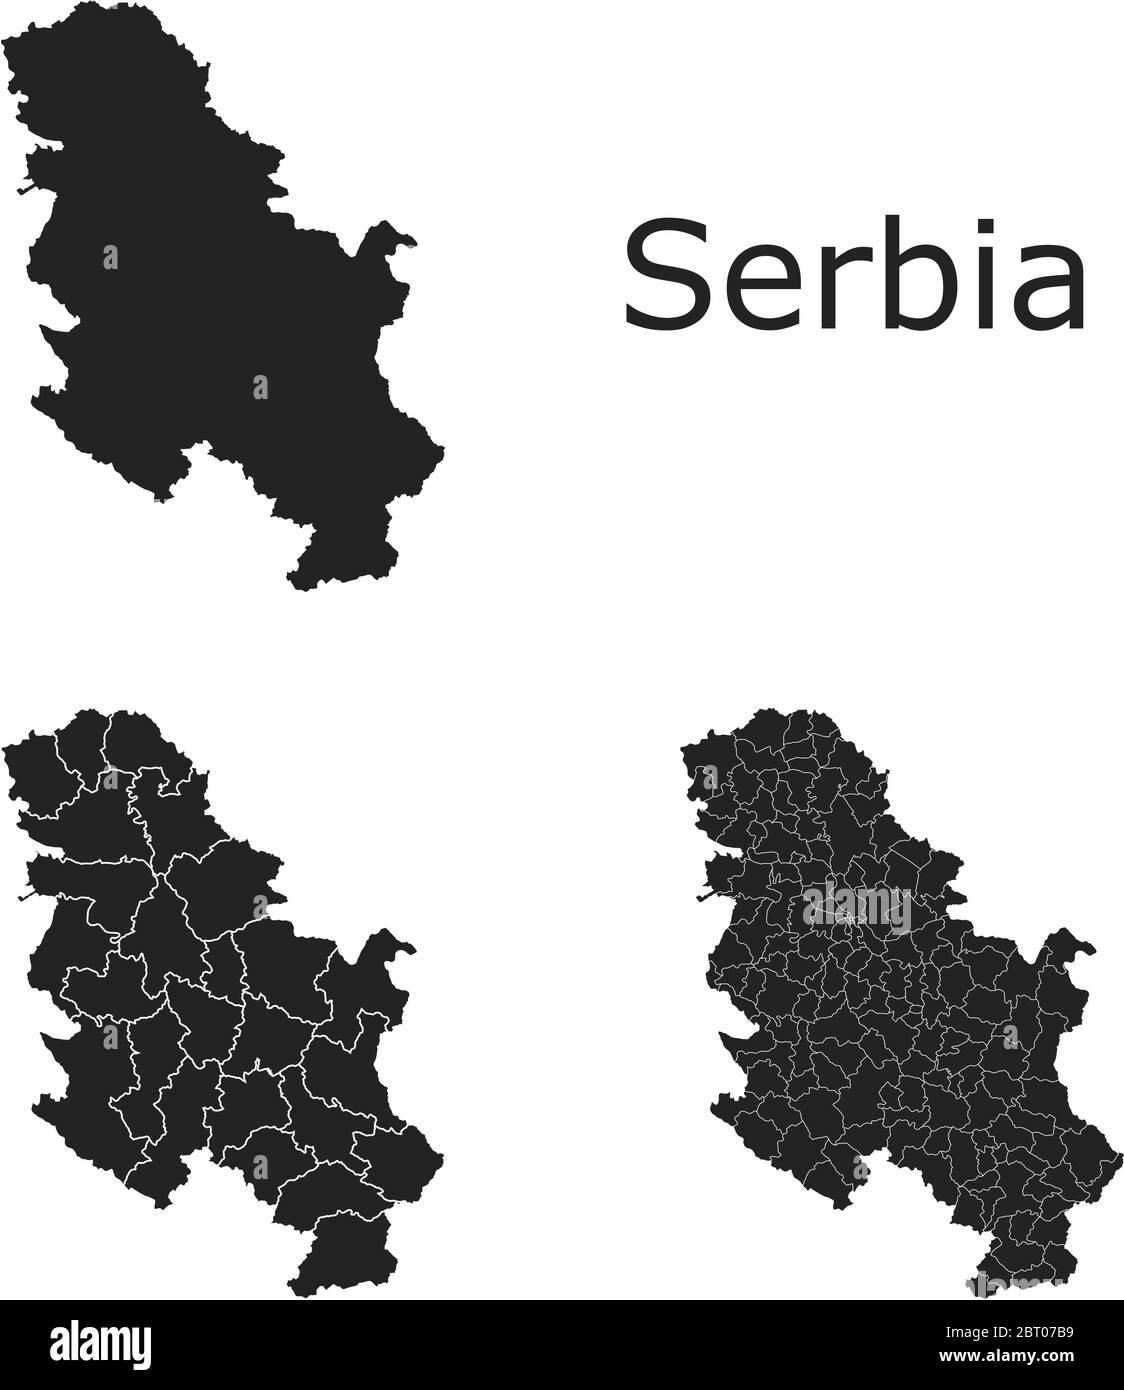 Cartes vectorielles de la Serbie avec régions administratives, municipalités, départements, frontières Illustration de Vecteur